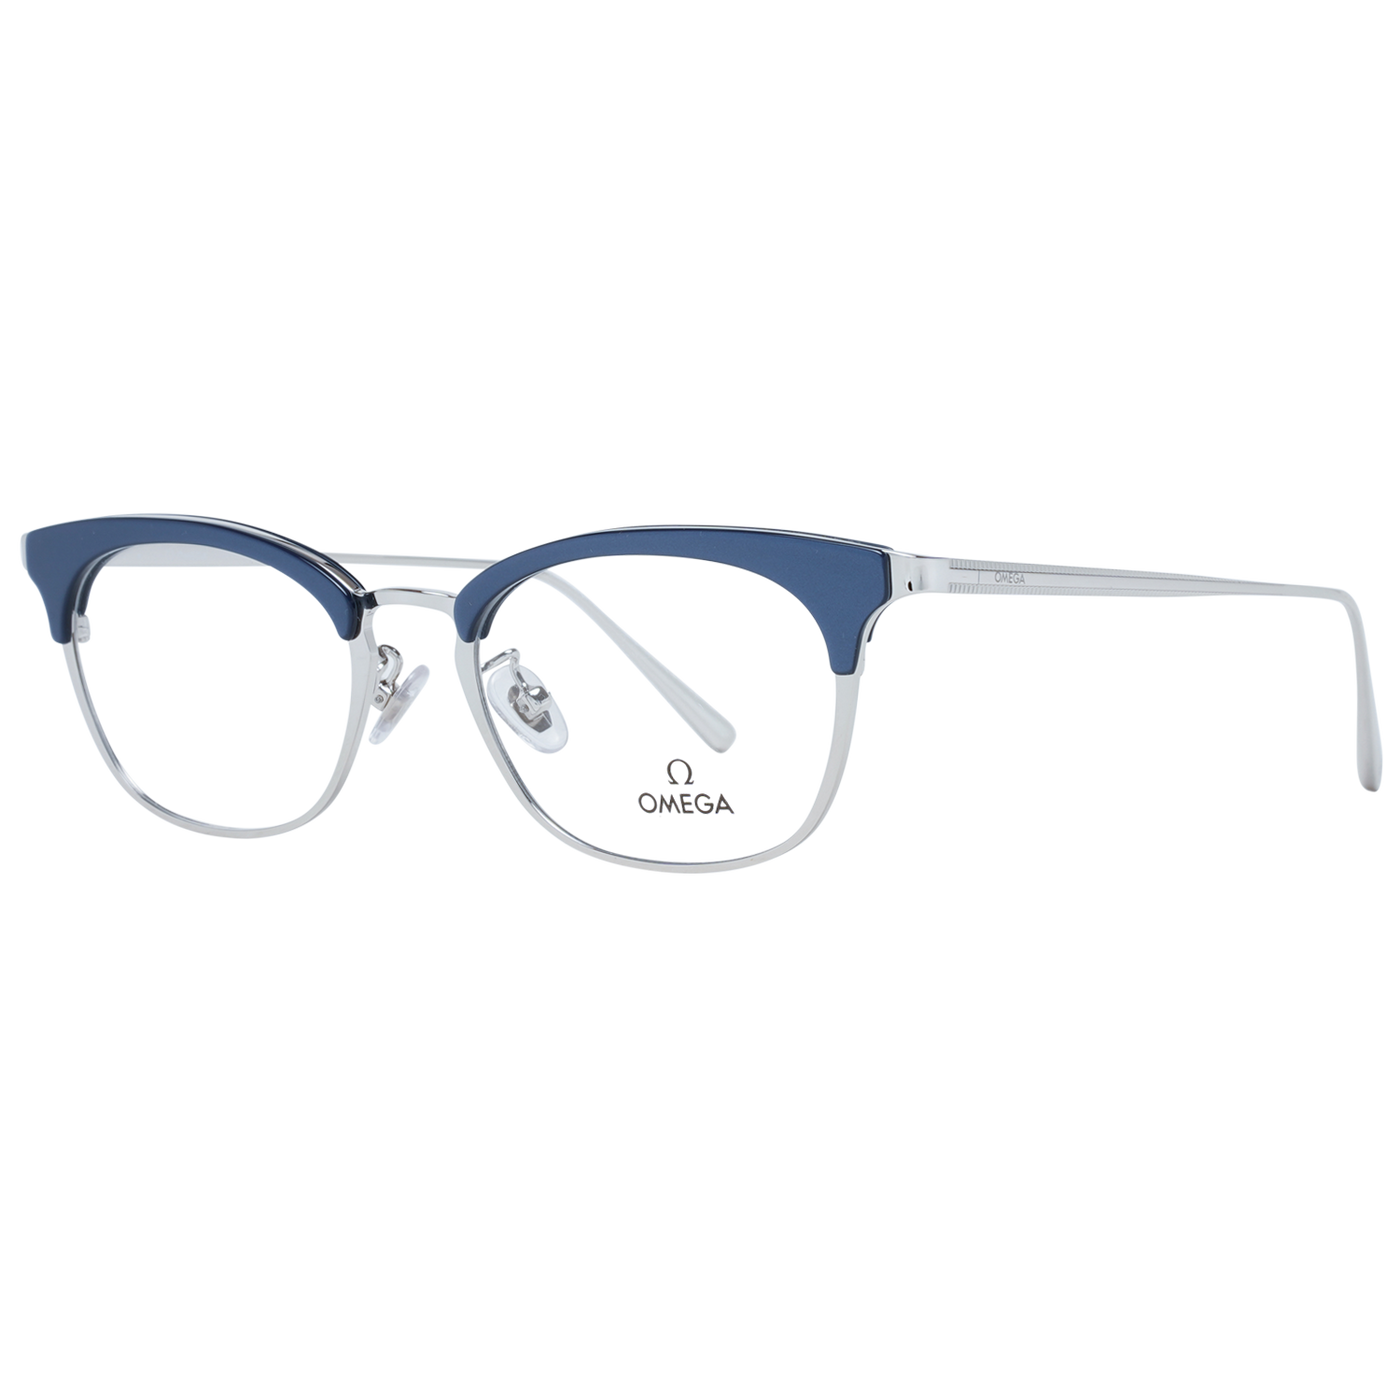 Omega Blue Women Optical Frames